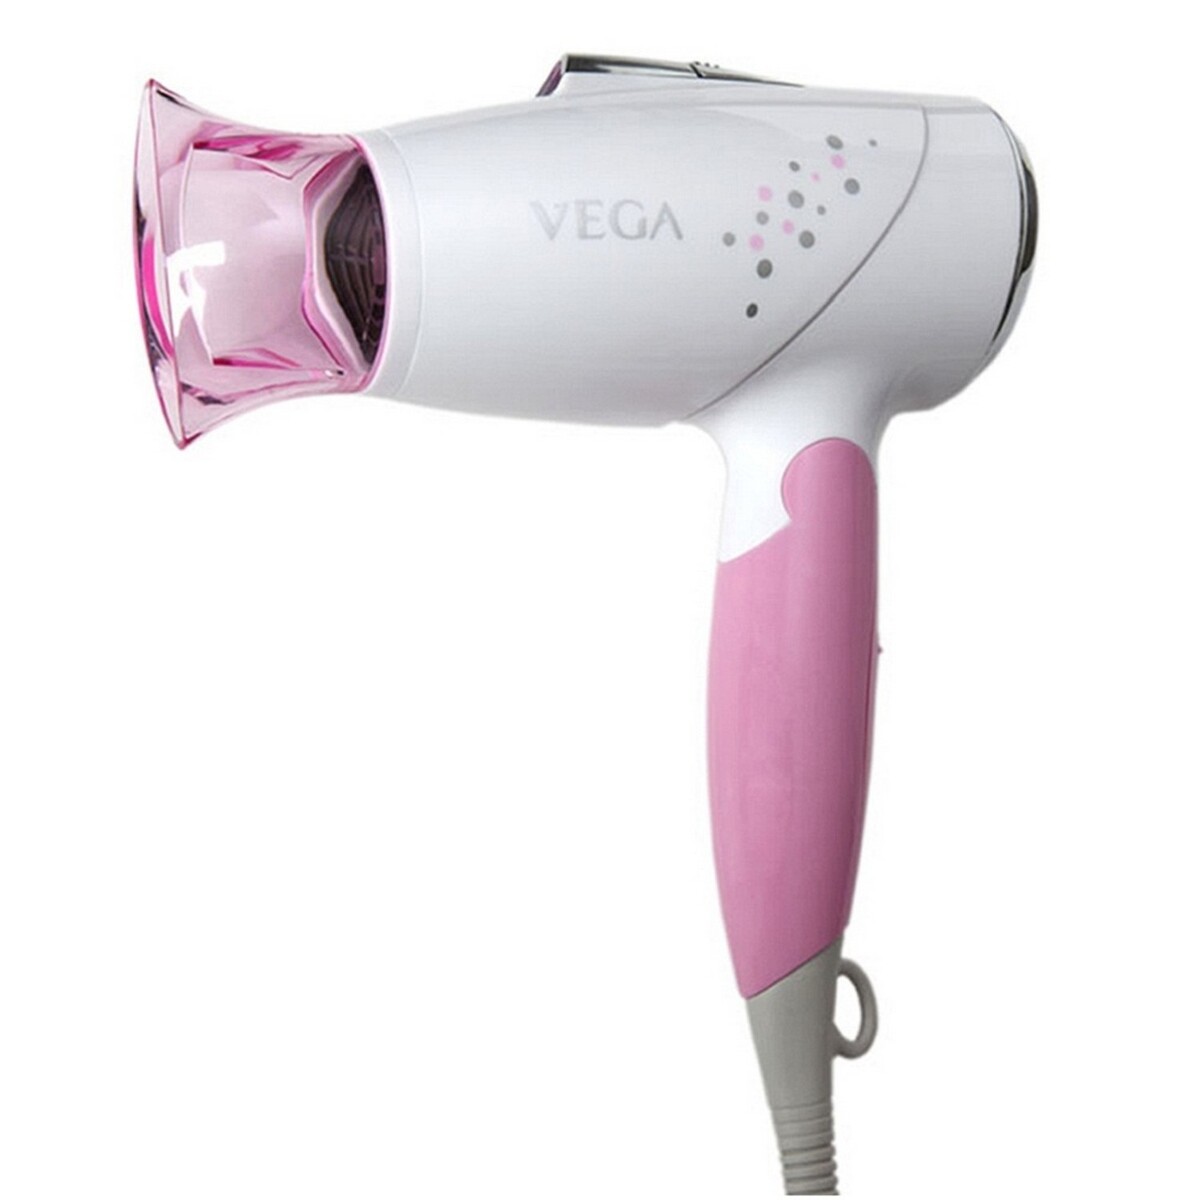 Vega Aroma Hair Dryer VHDH-09